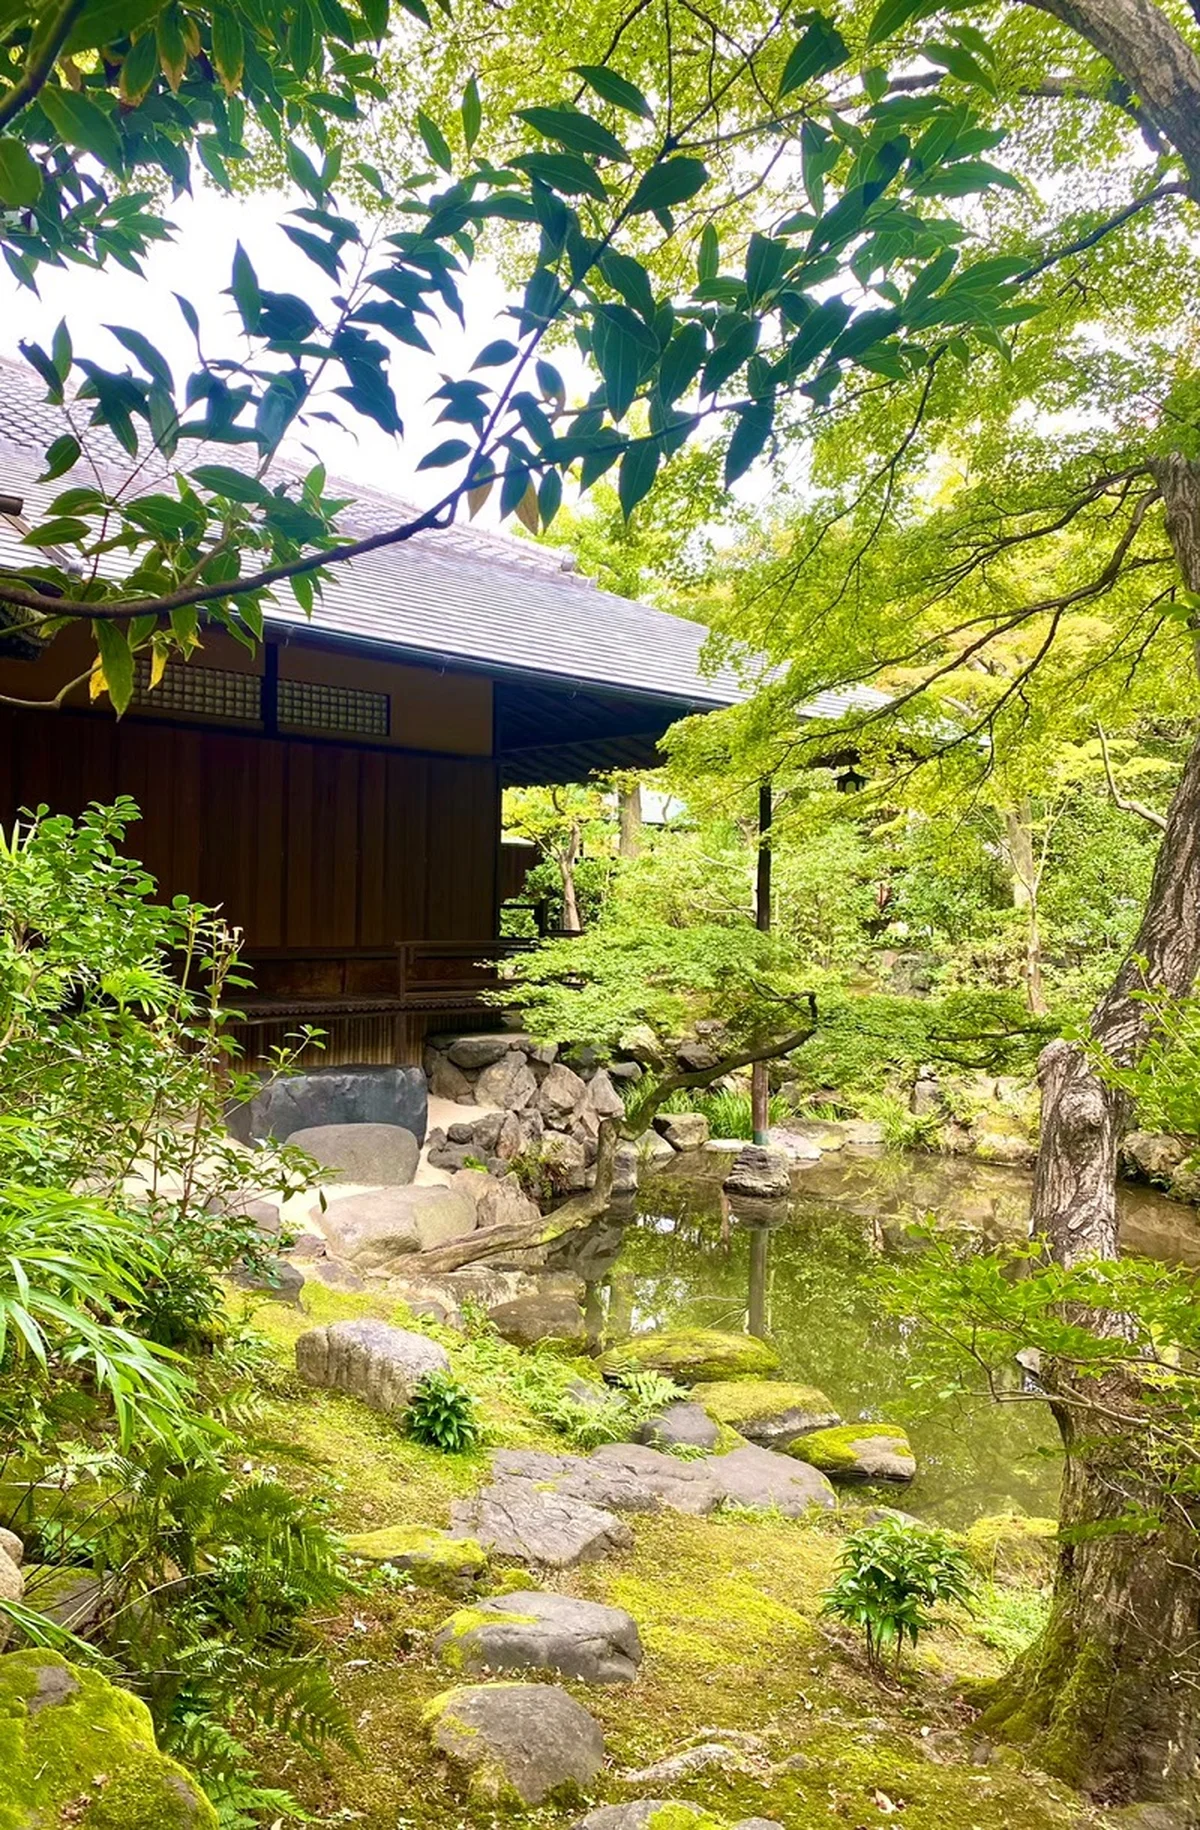 「廣誠院」の敷地に一歩足を踏み入れると、京都の街中だとは思えない静寂に包まれた空間